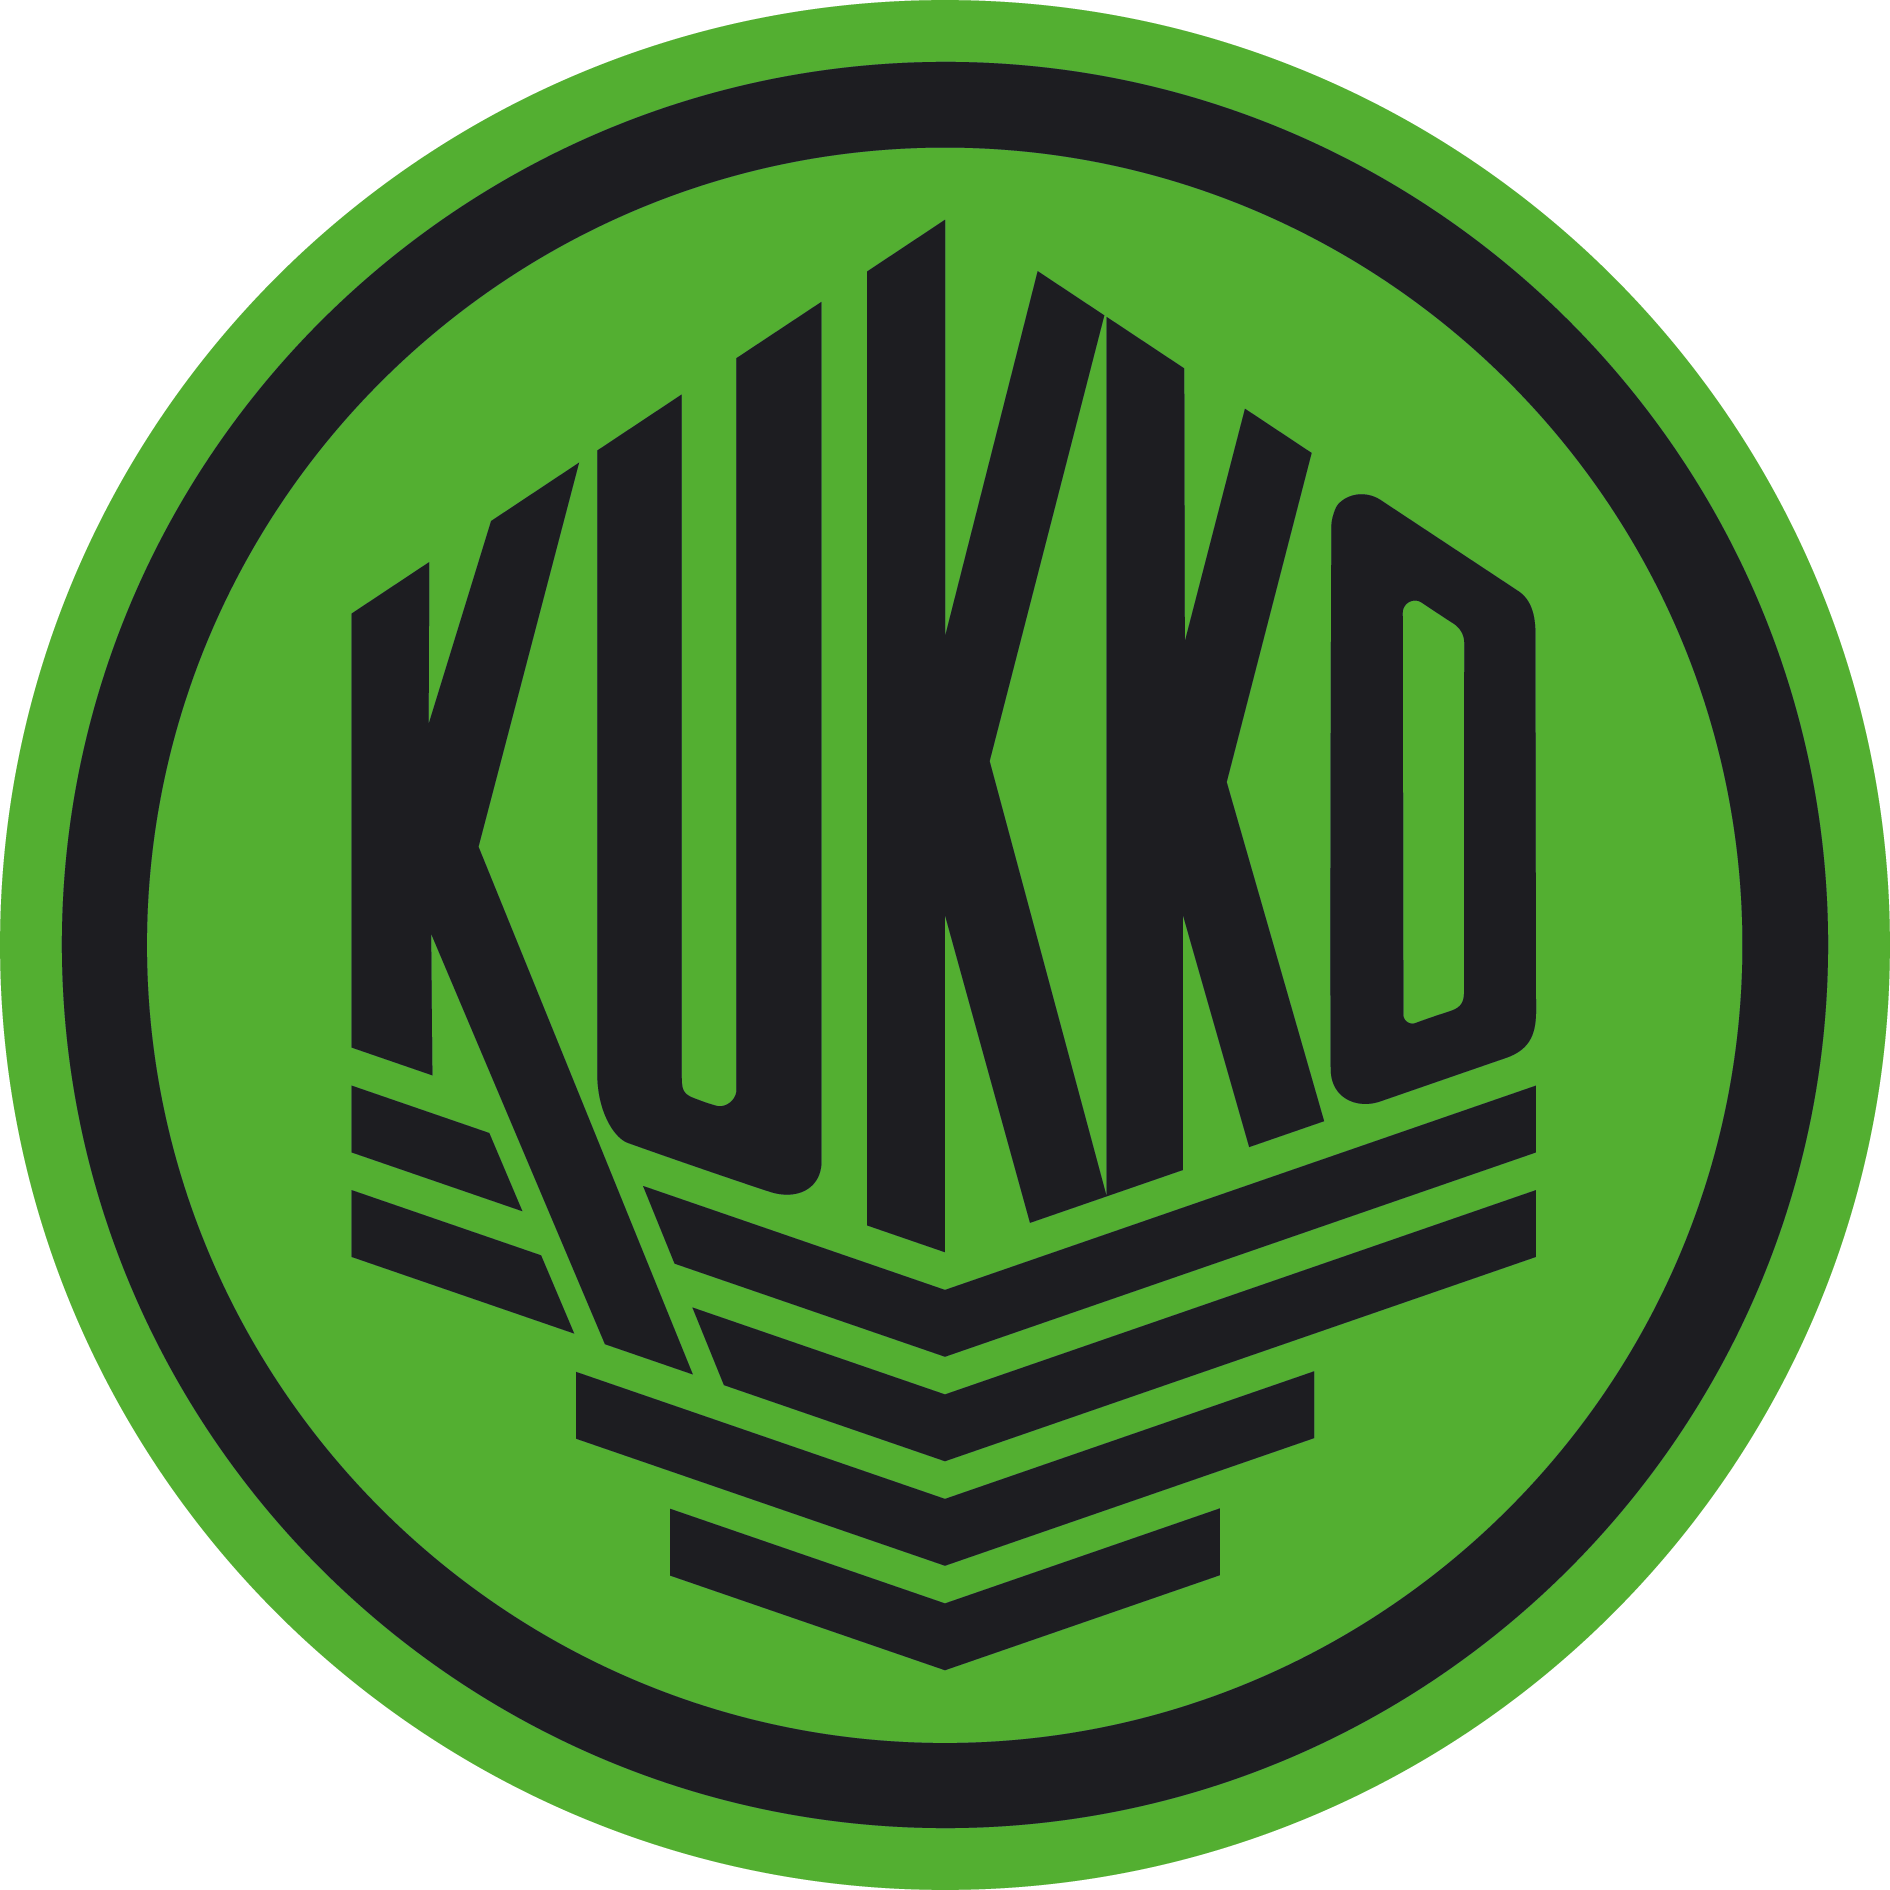 KUKKO Werkzeugfabrik | Abzieher für Industrie und Handwerk | seit 1919